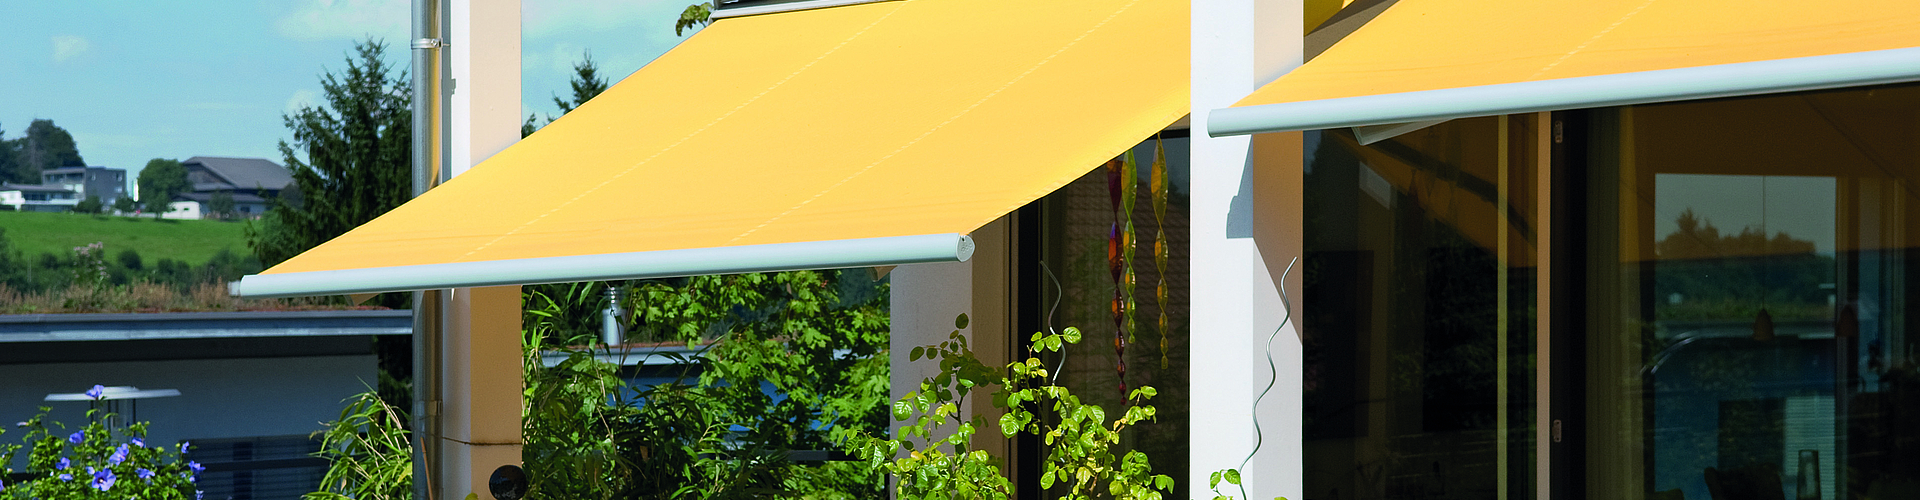 gelbe, ausgefahrene Gelenkarm-Markisen über Terrasse, getrennt durch weiße Säulen, Terrasse mit Pflanzen, Tisch und Stühlen